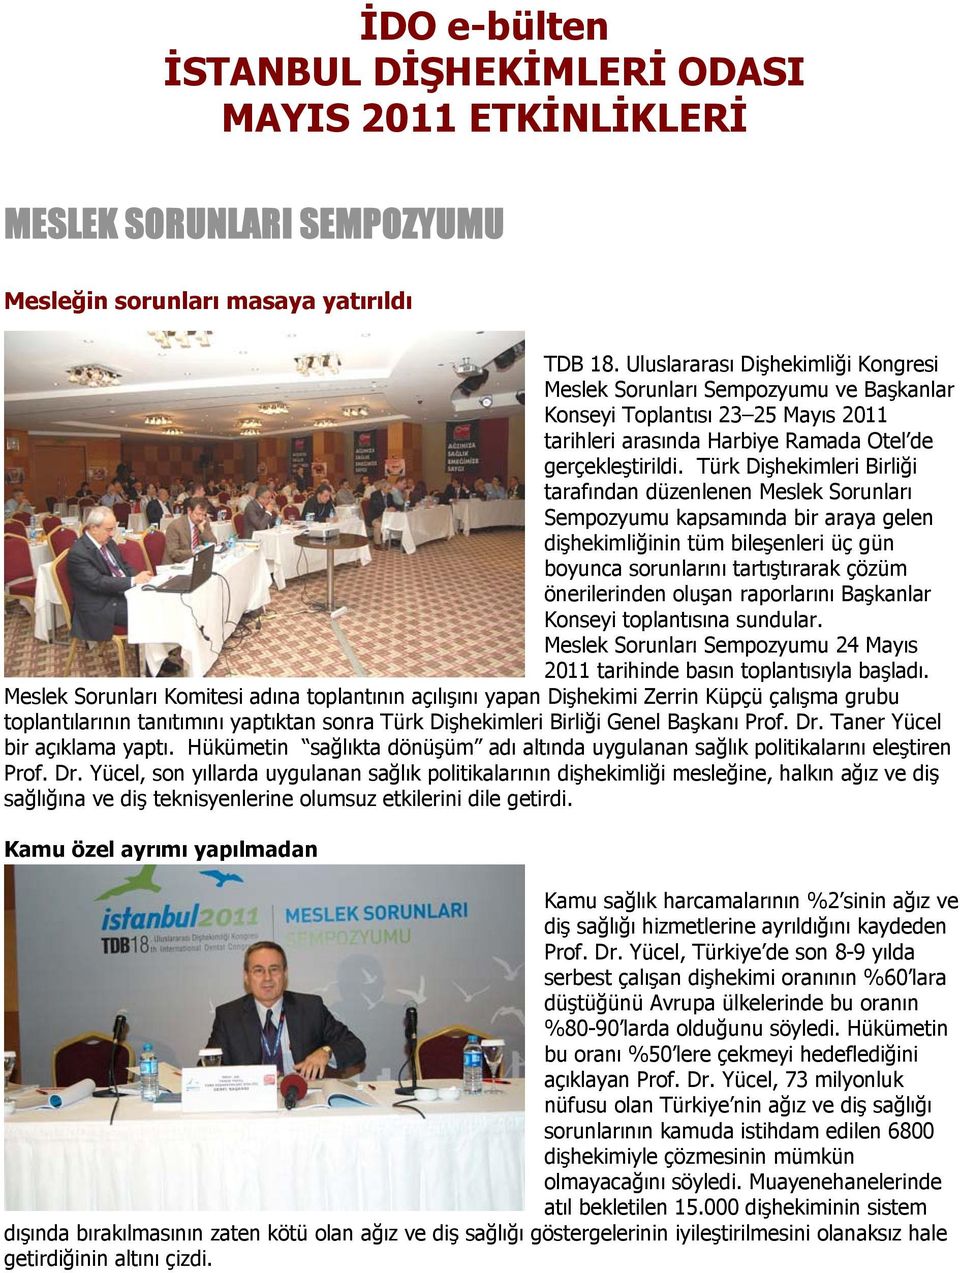 Türk Dişhekimleri Birliği tarafından düzenlenen Meslek Sorunları Sempozyumu kapsamında bir araya gelen dişhekimliğinin tüm bileşenleri üç gün boyunca sorunlarını tartıştırarak çözüm önerilerinden